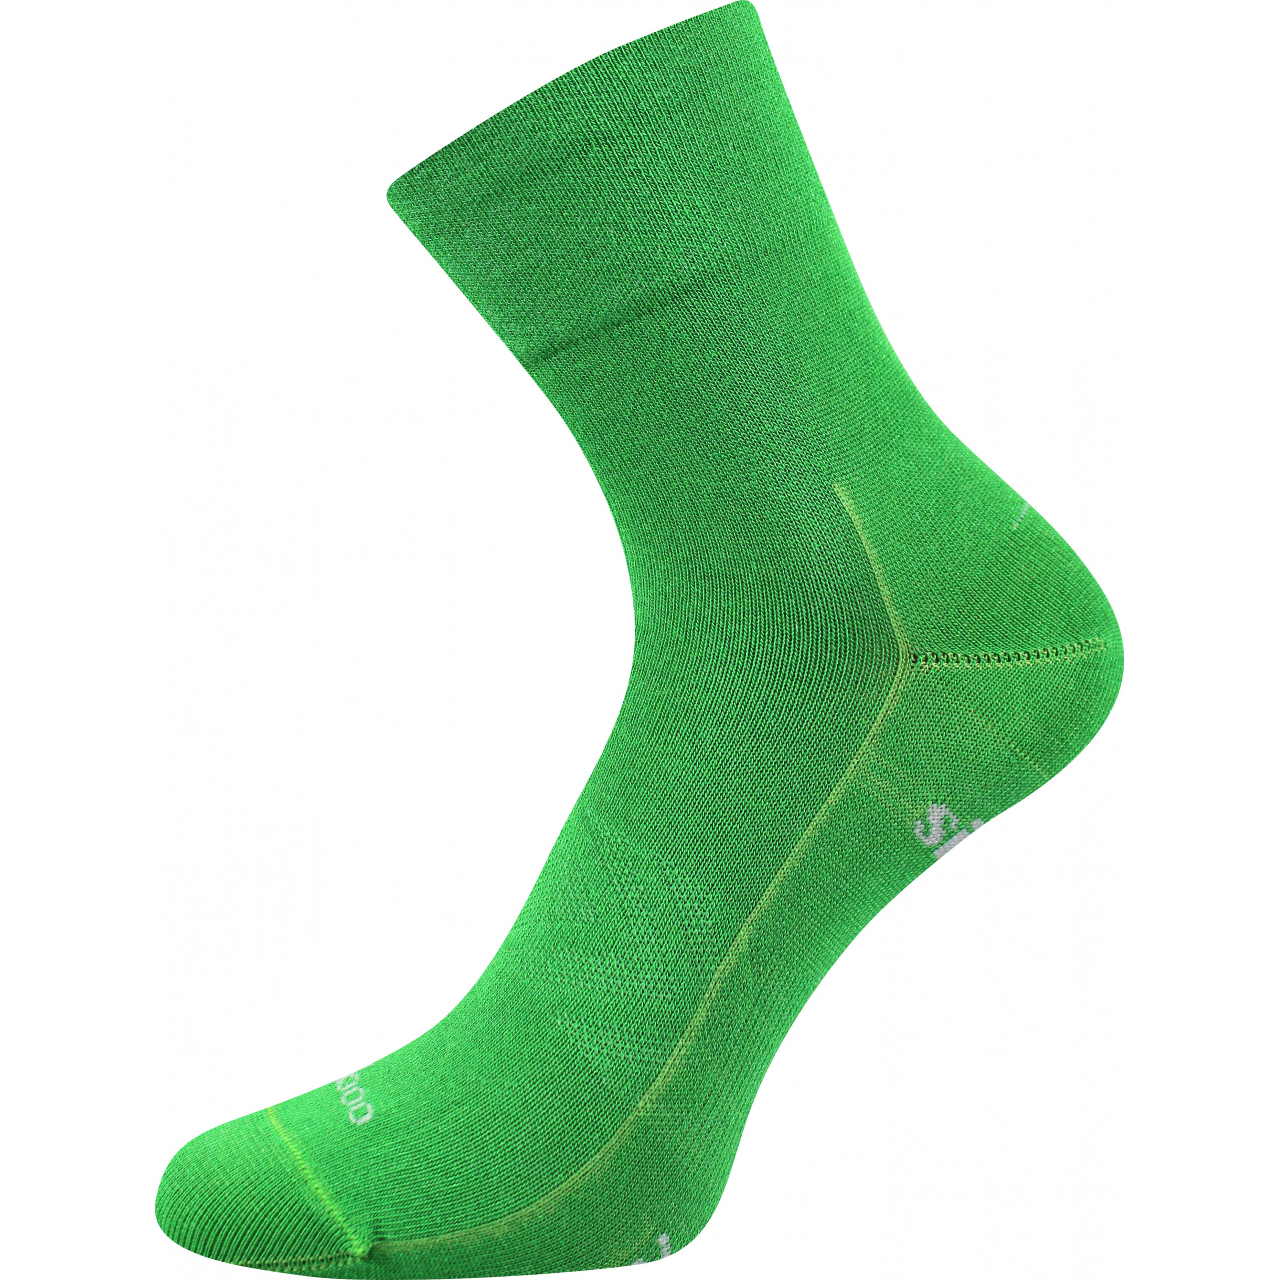 Ponožky sportovní unisex Voxx Baeron - zelené, 39-42